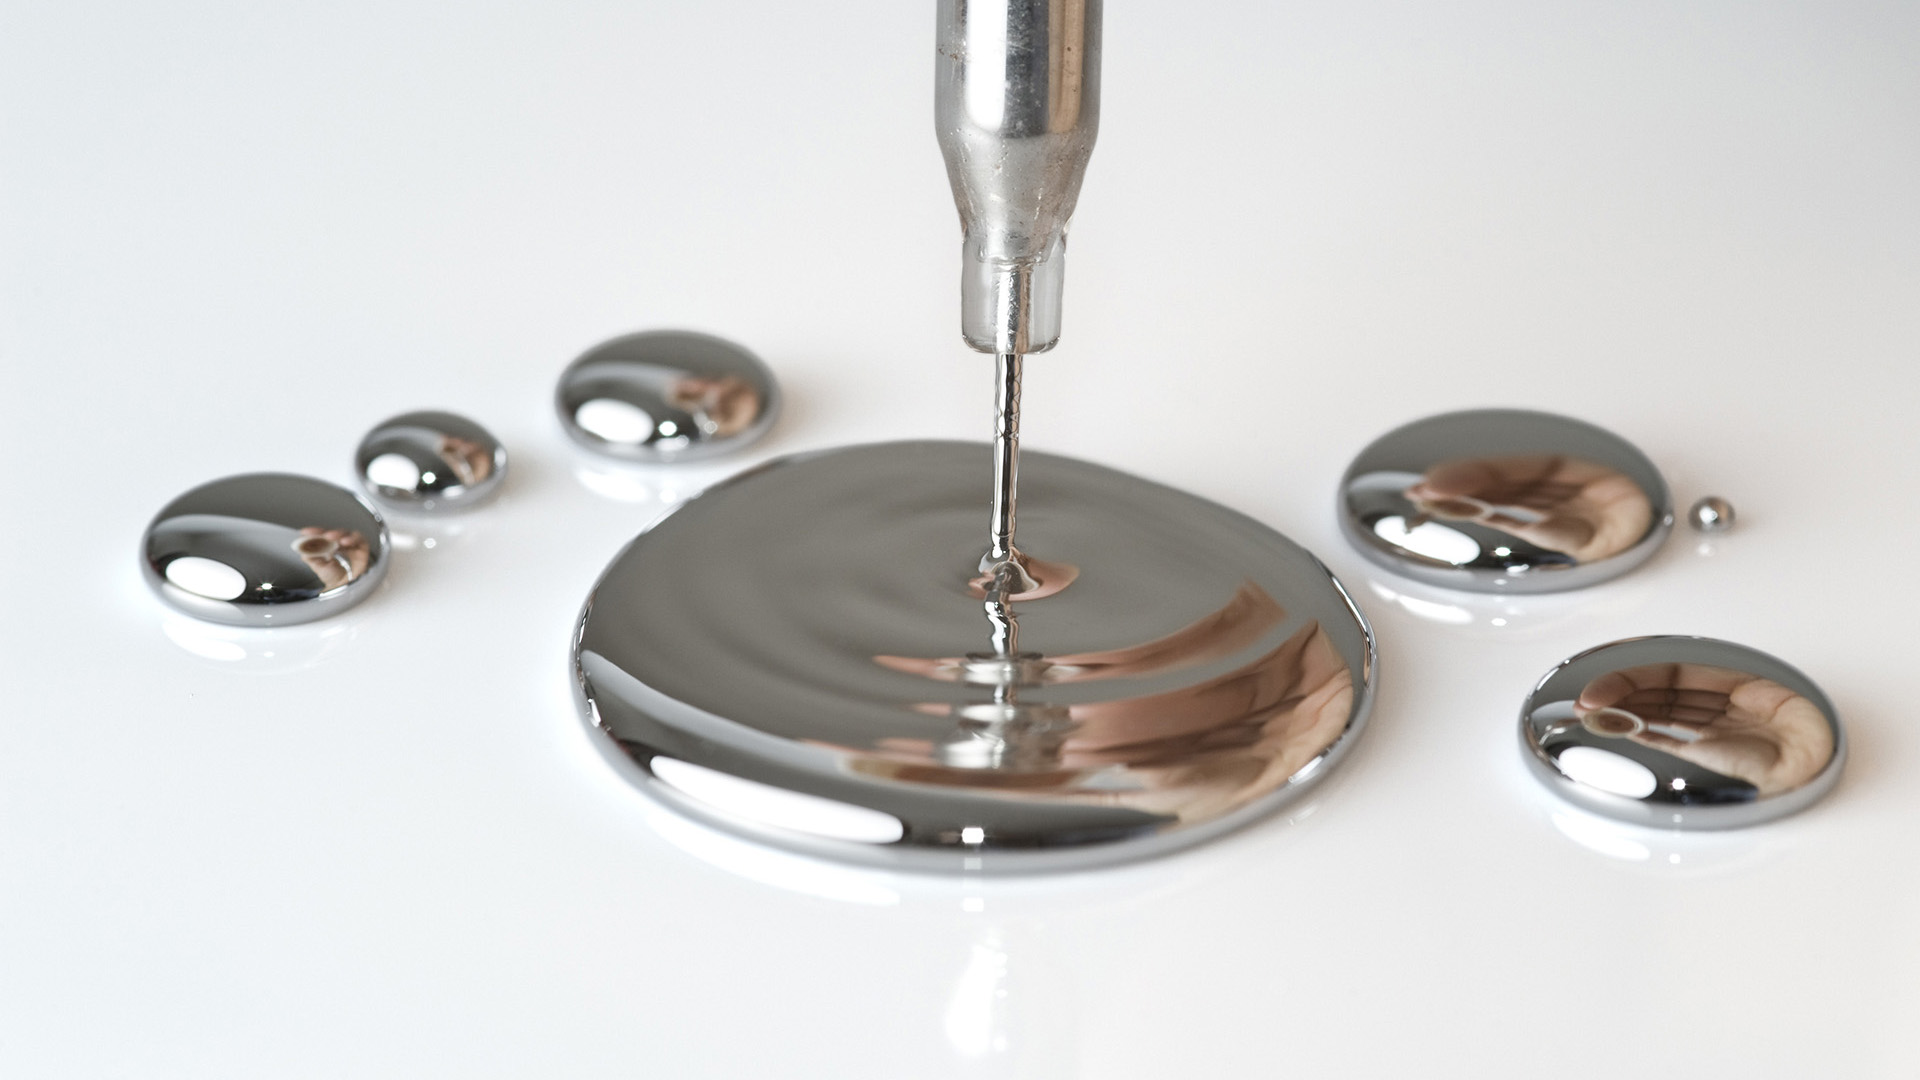 IMA - Metodos para eliminar mercurio en agua potable